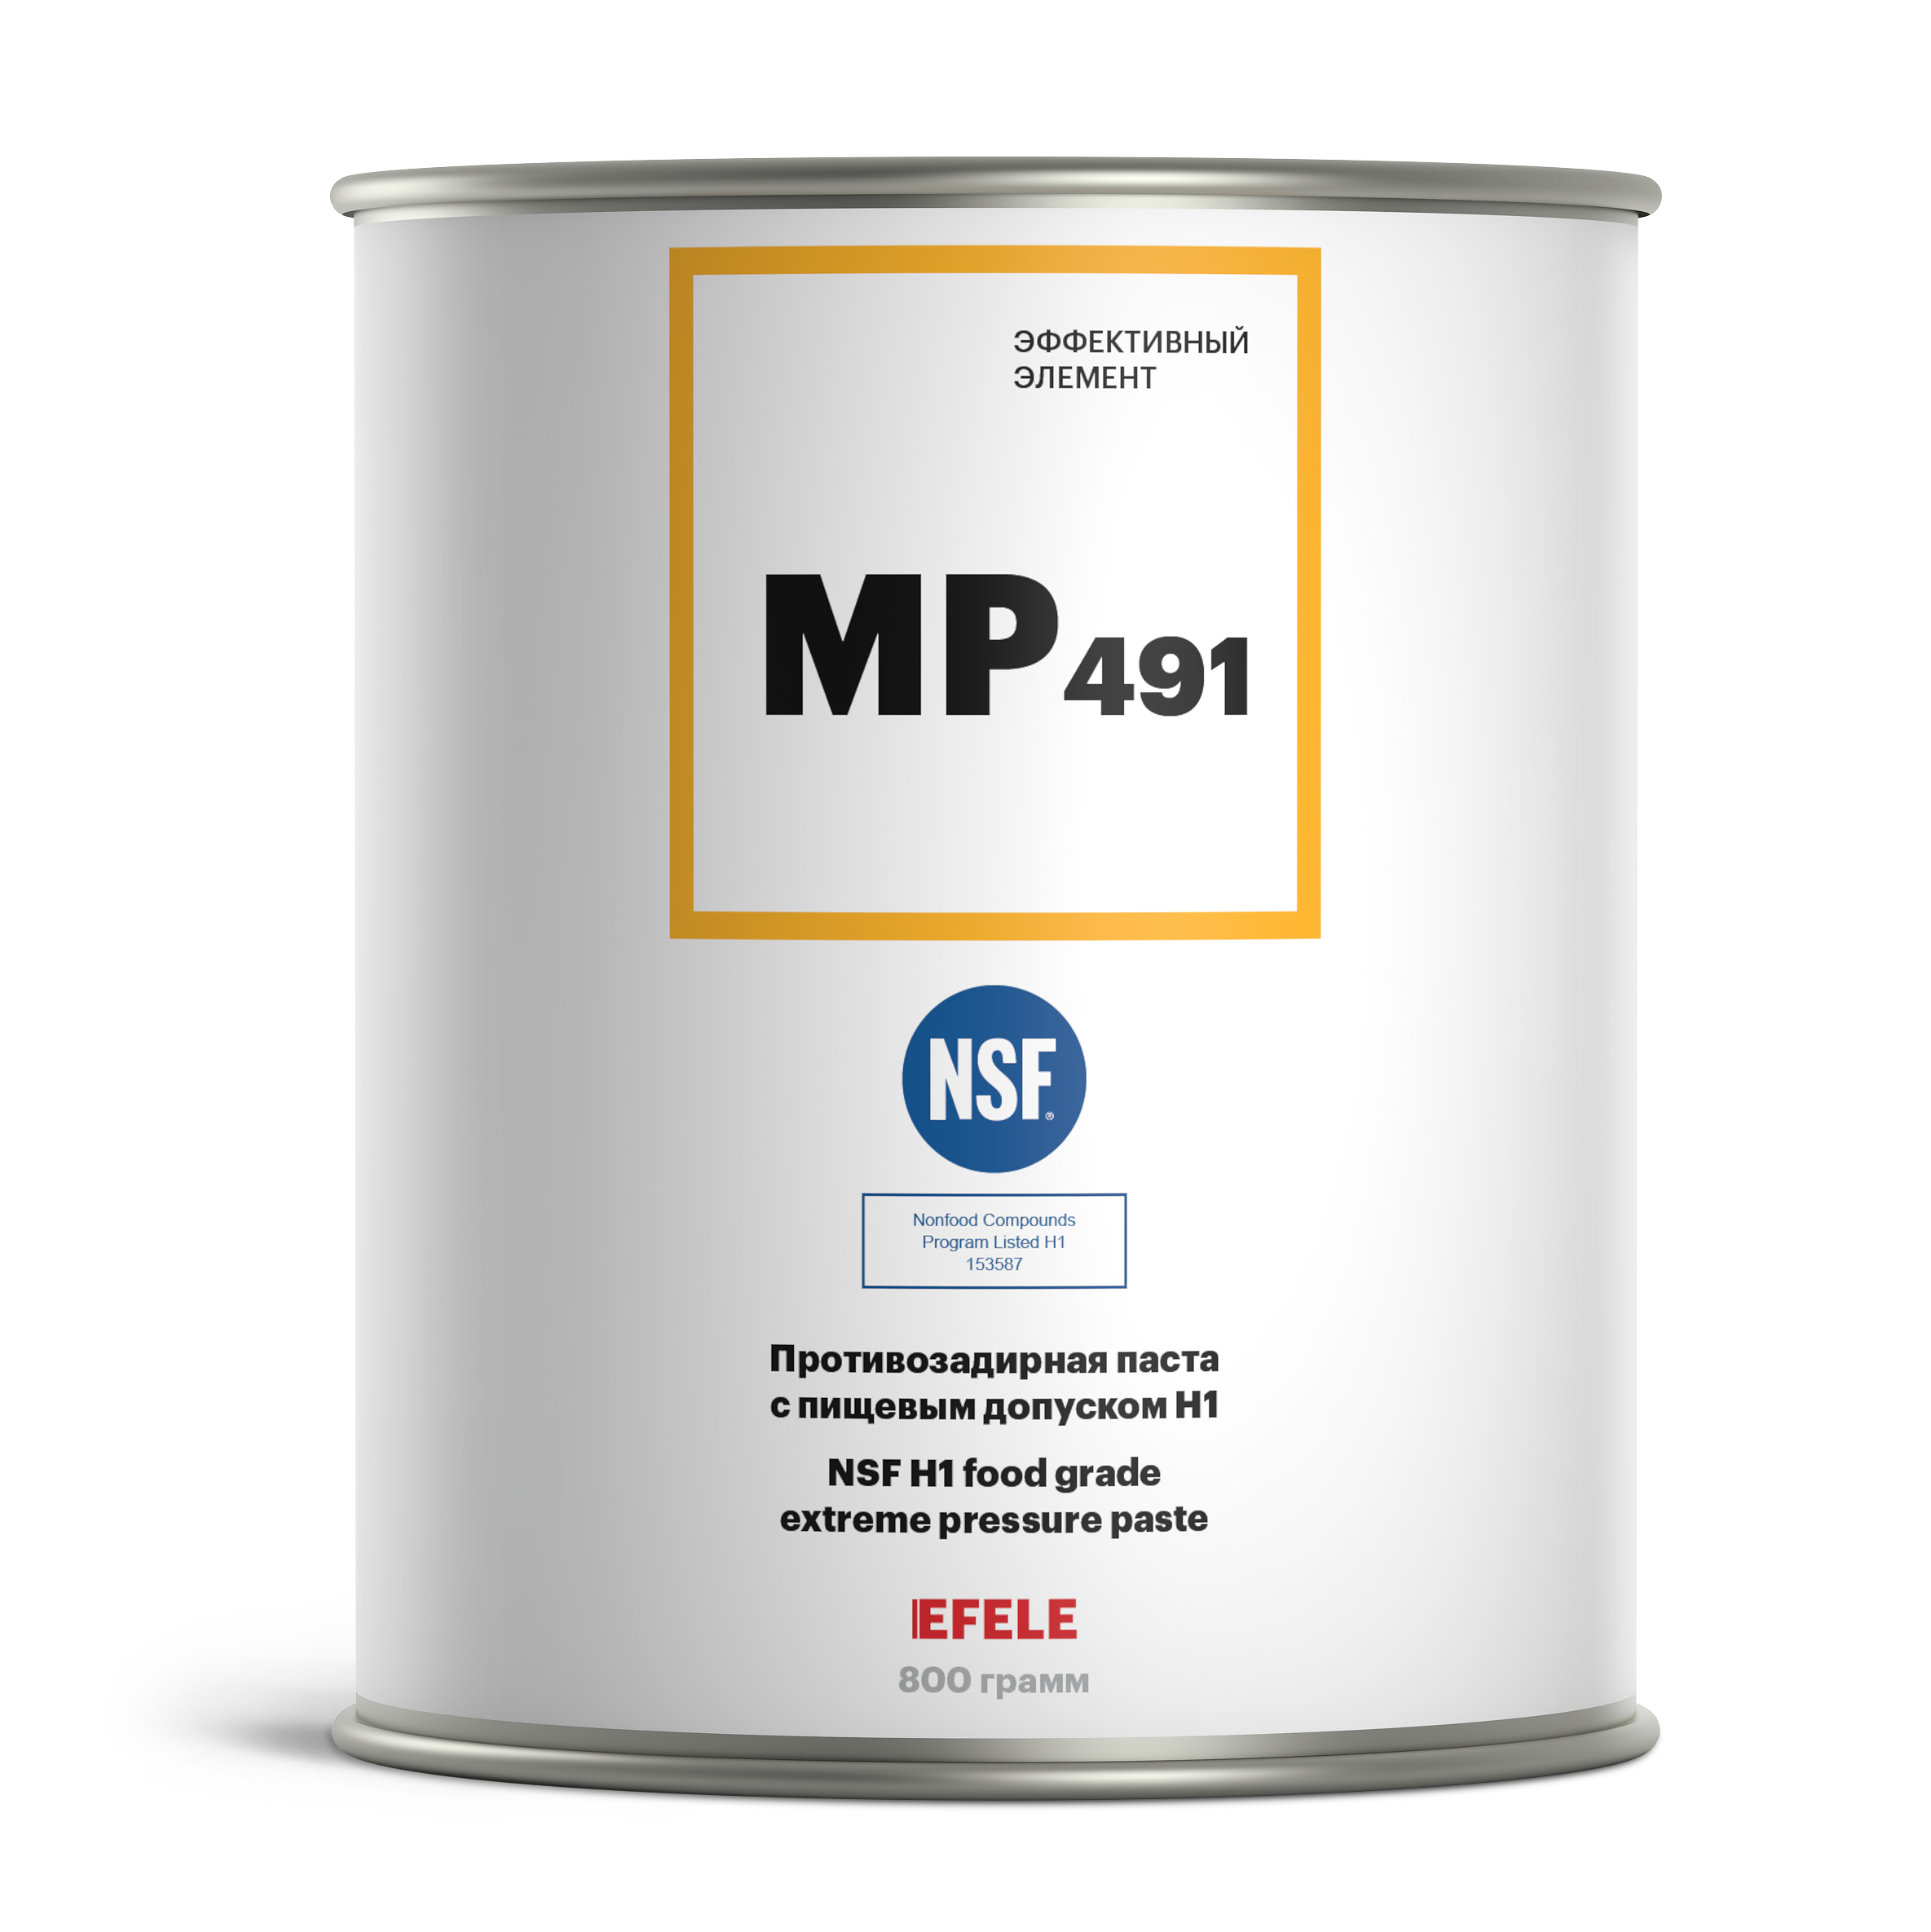 Противозадирная паста EFELE МР-491 с пищевым допуском NSF H1 (0.8 кг)